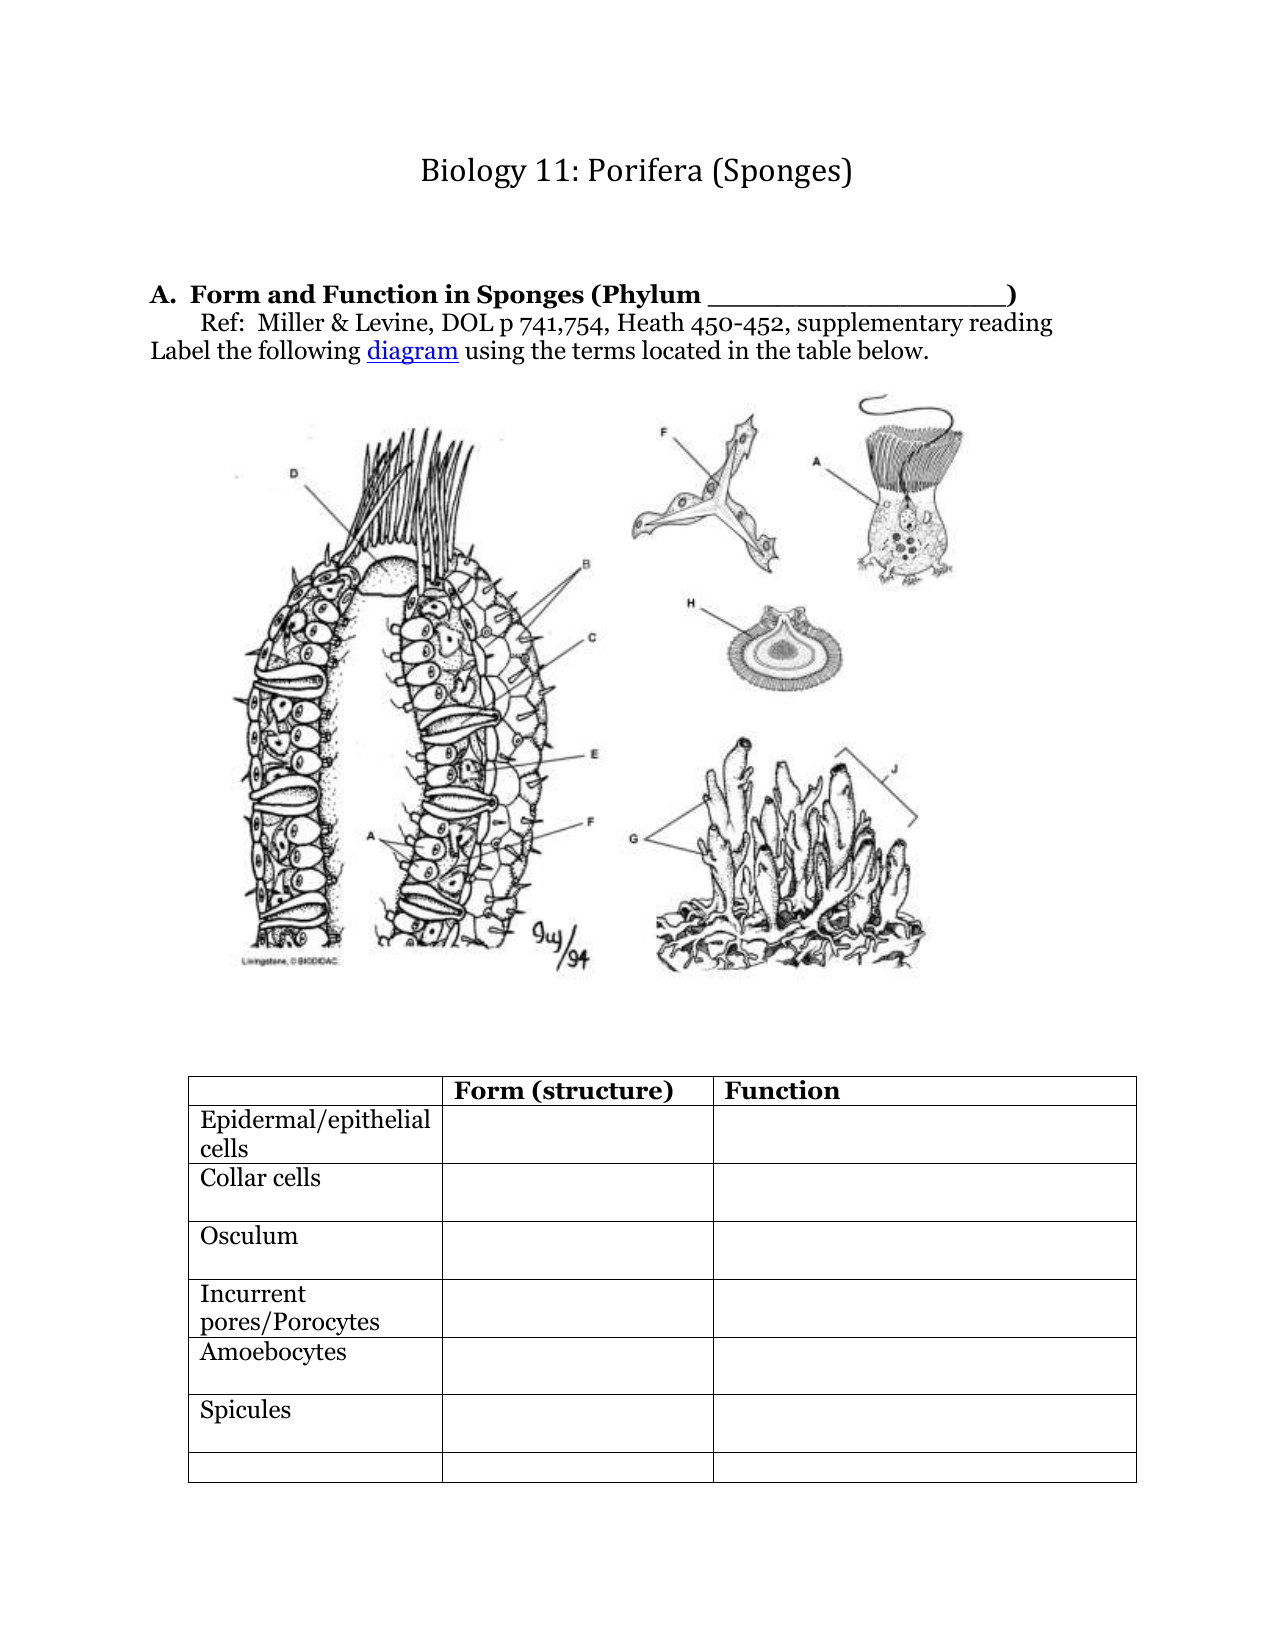 Porifera Characteristics Chart